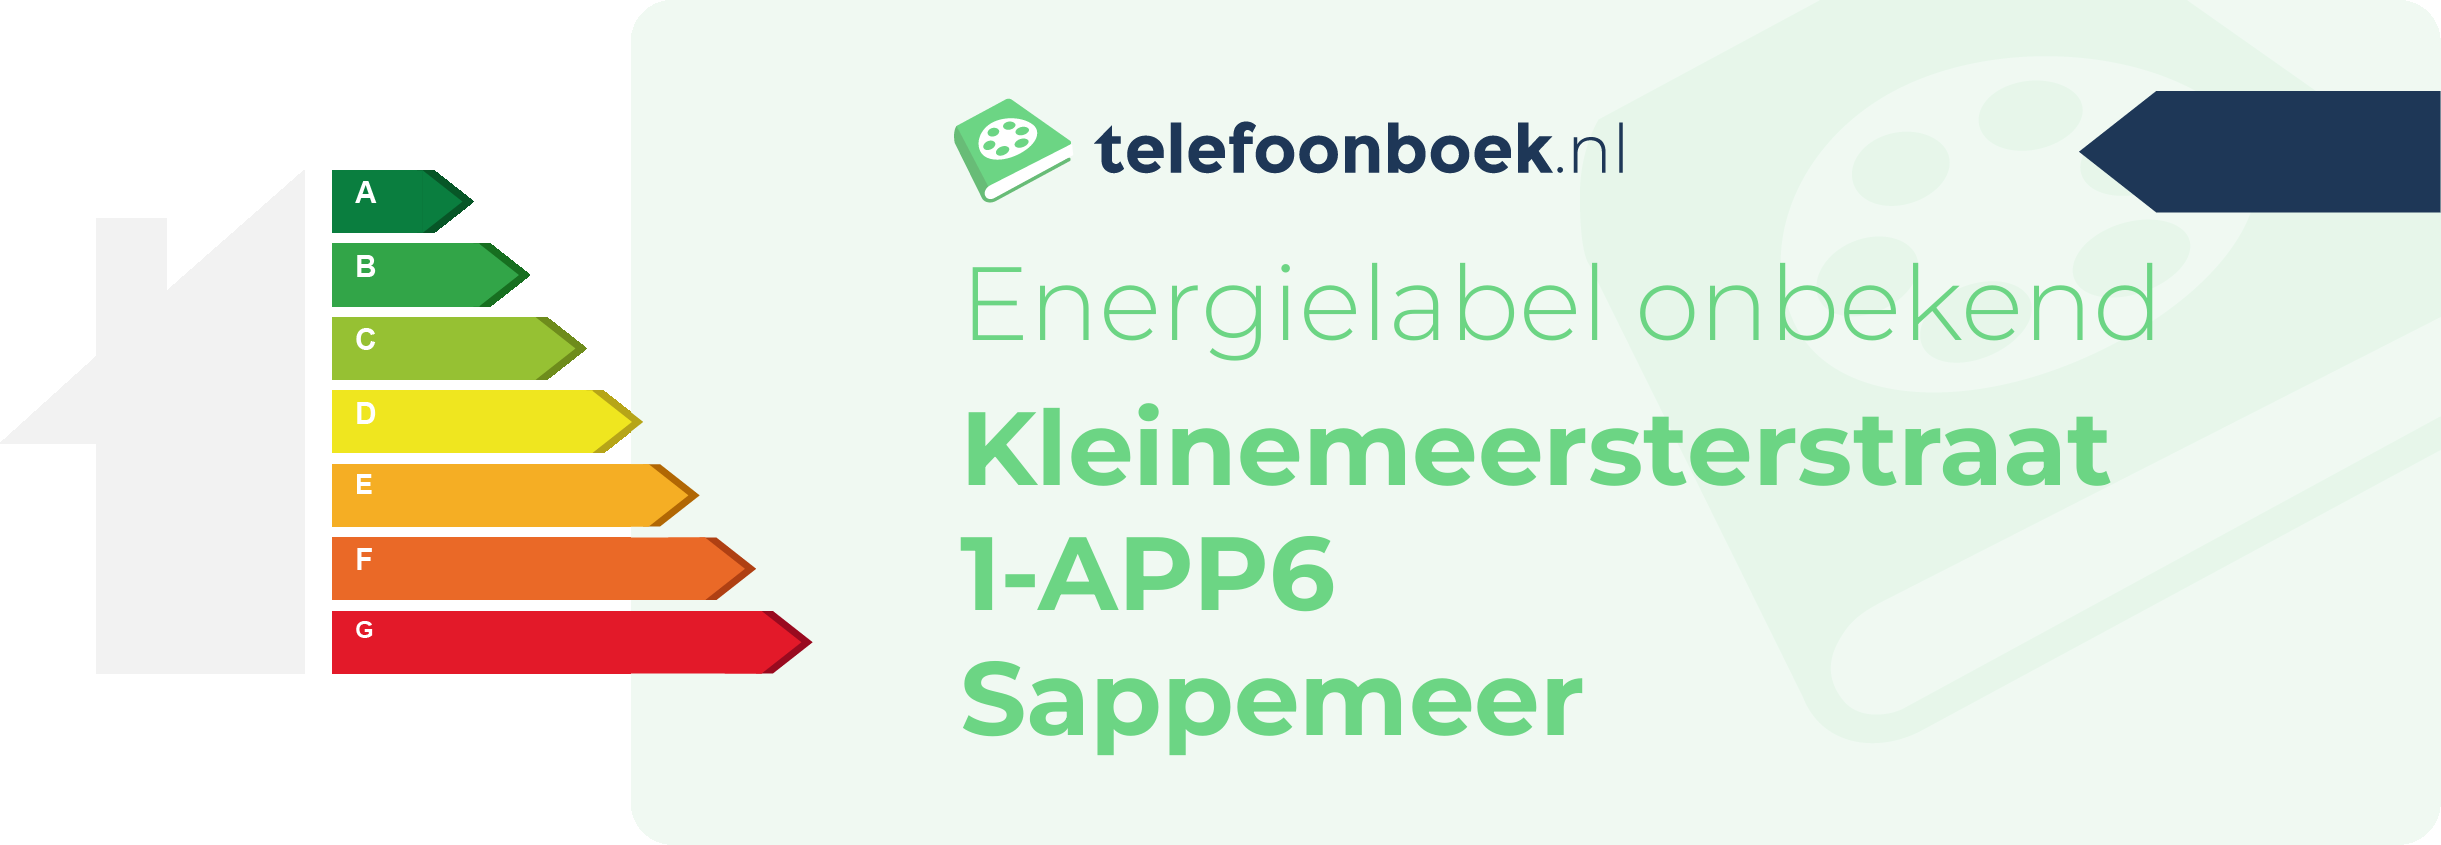 Energielabel Kleinemeersterstraat 1-APP6 Sappemeer